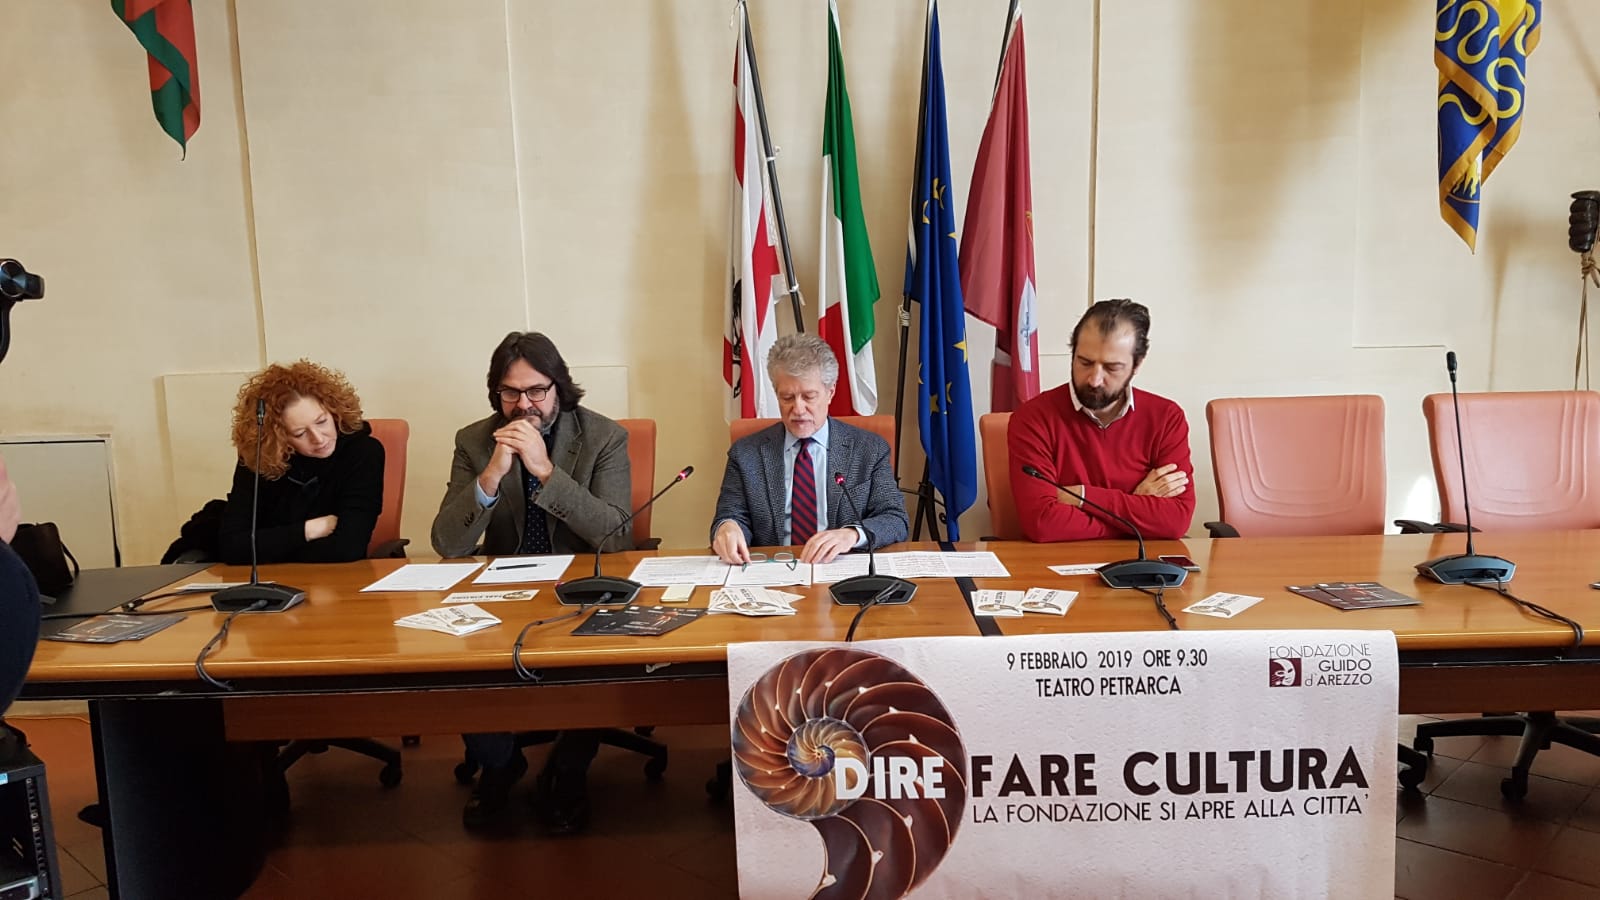 “Dire Fare Cultura”: la Fondazione Guido d’Arezzo si presenta